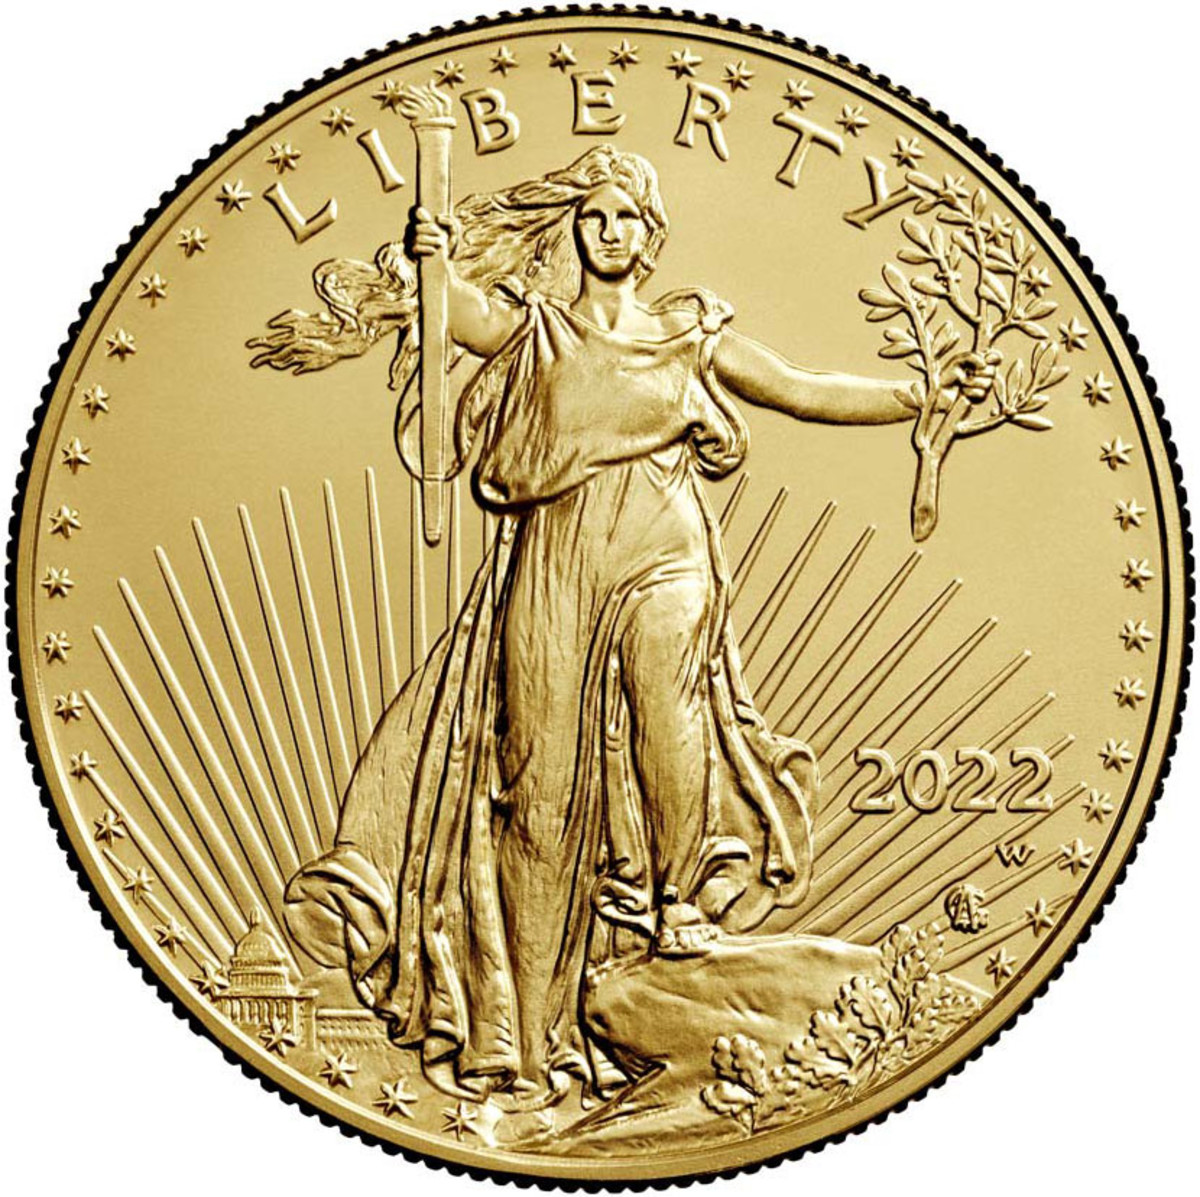 Image courtesy United States Mint.